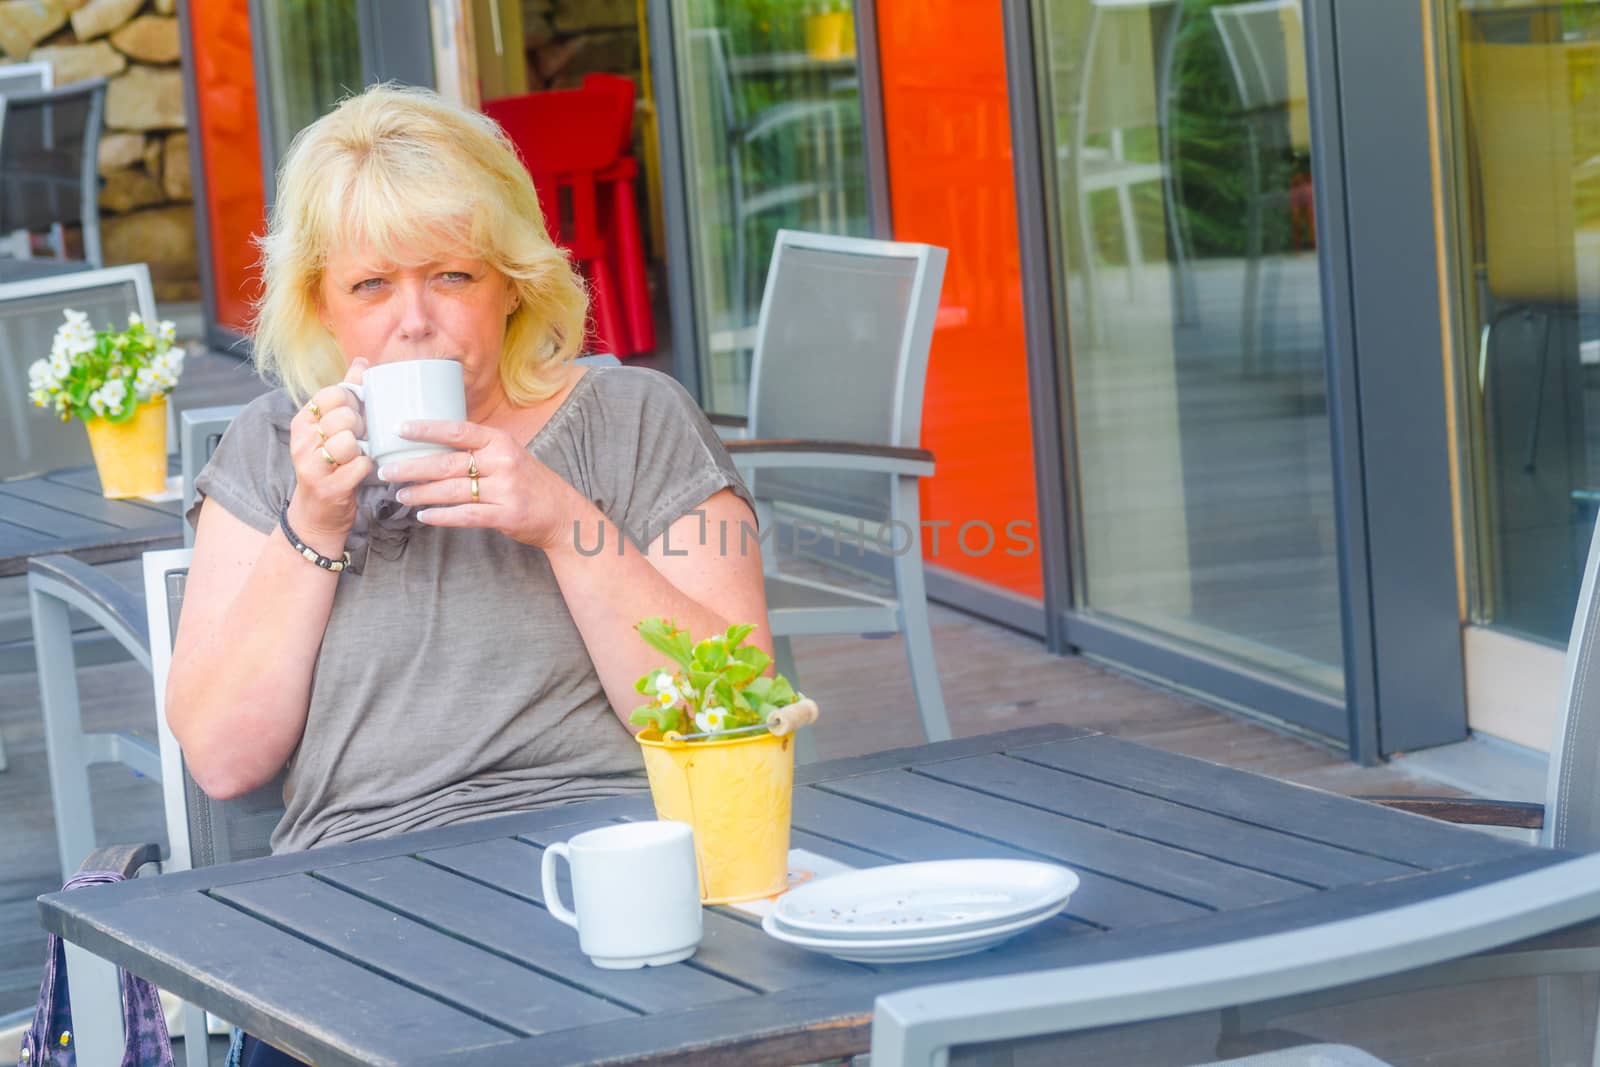 Blond woman enjoys a coffee in a sidewalk cafe.